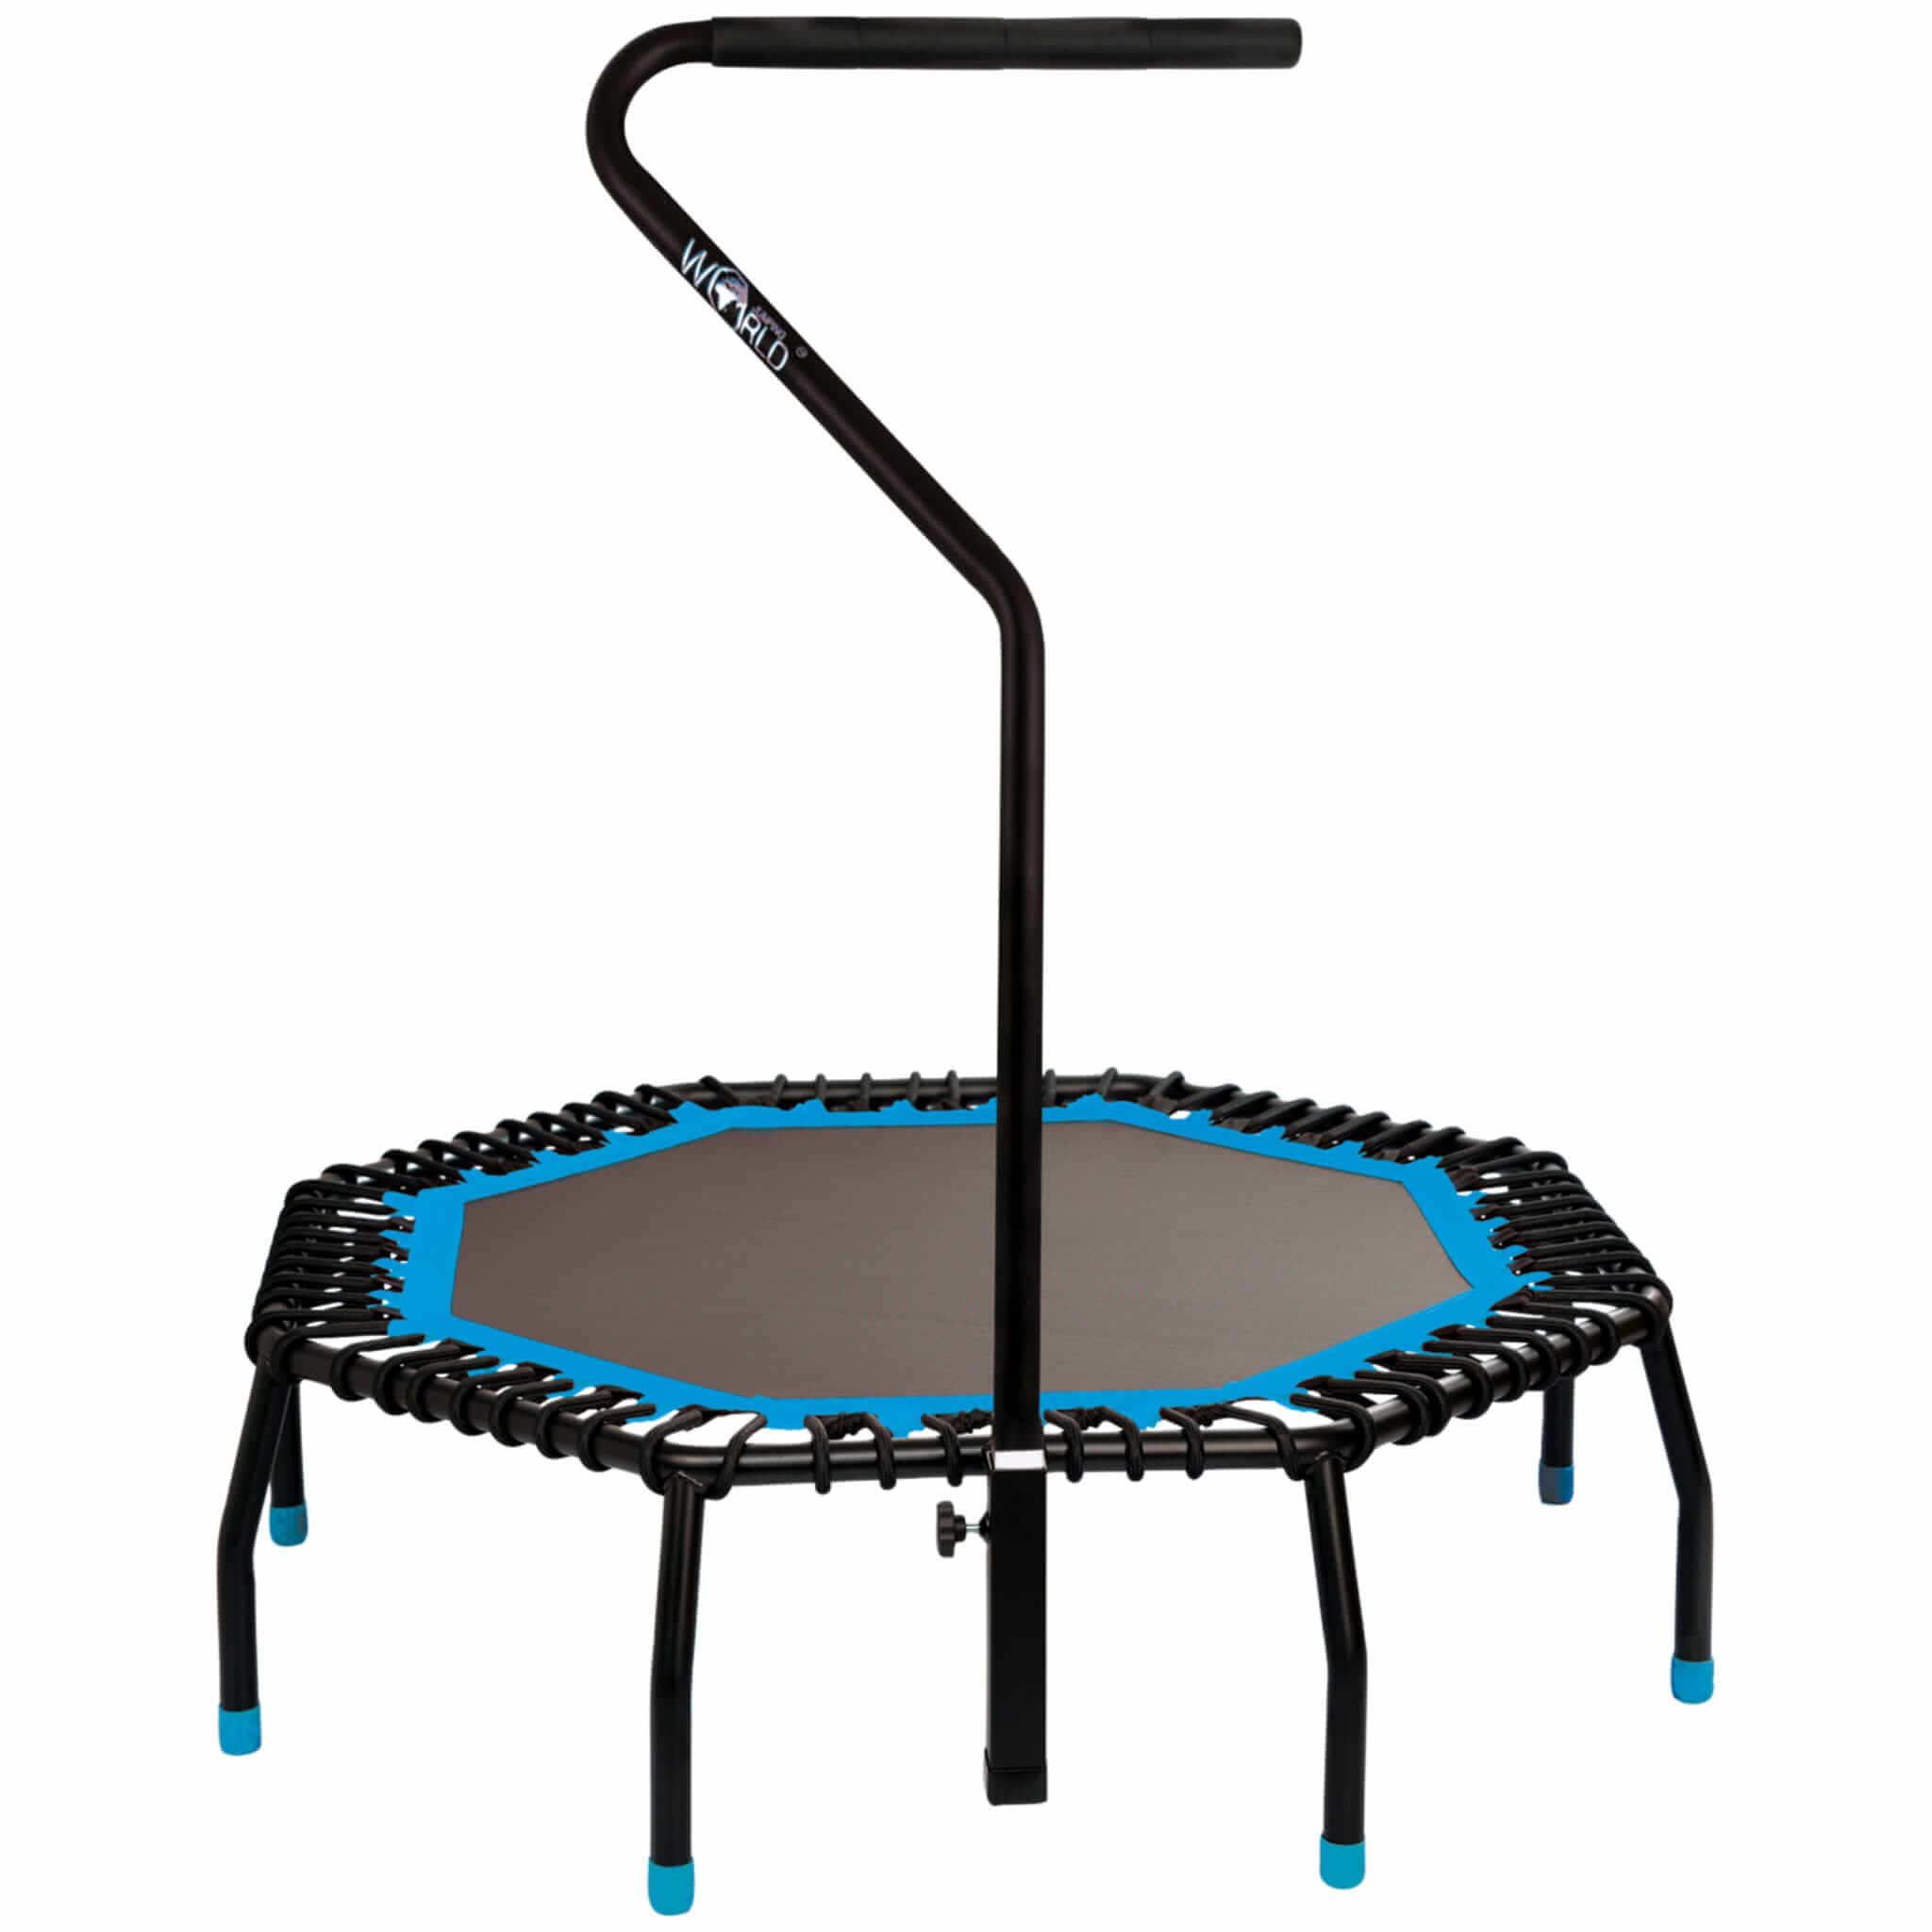 Spider highspeed trampoline